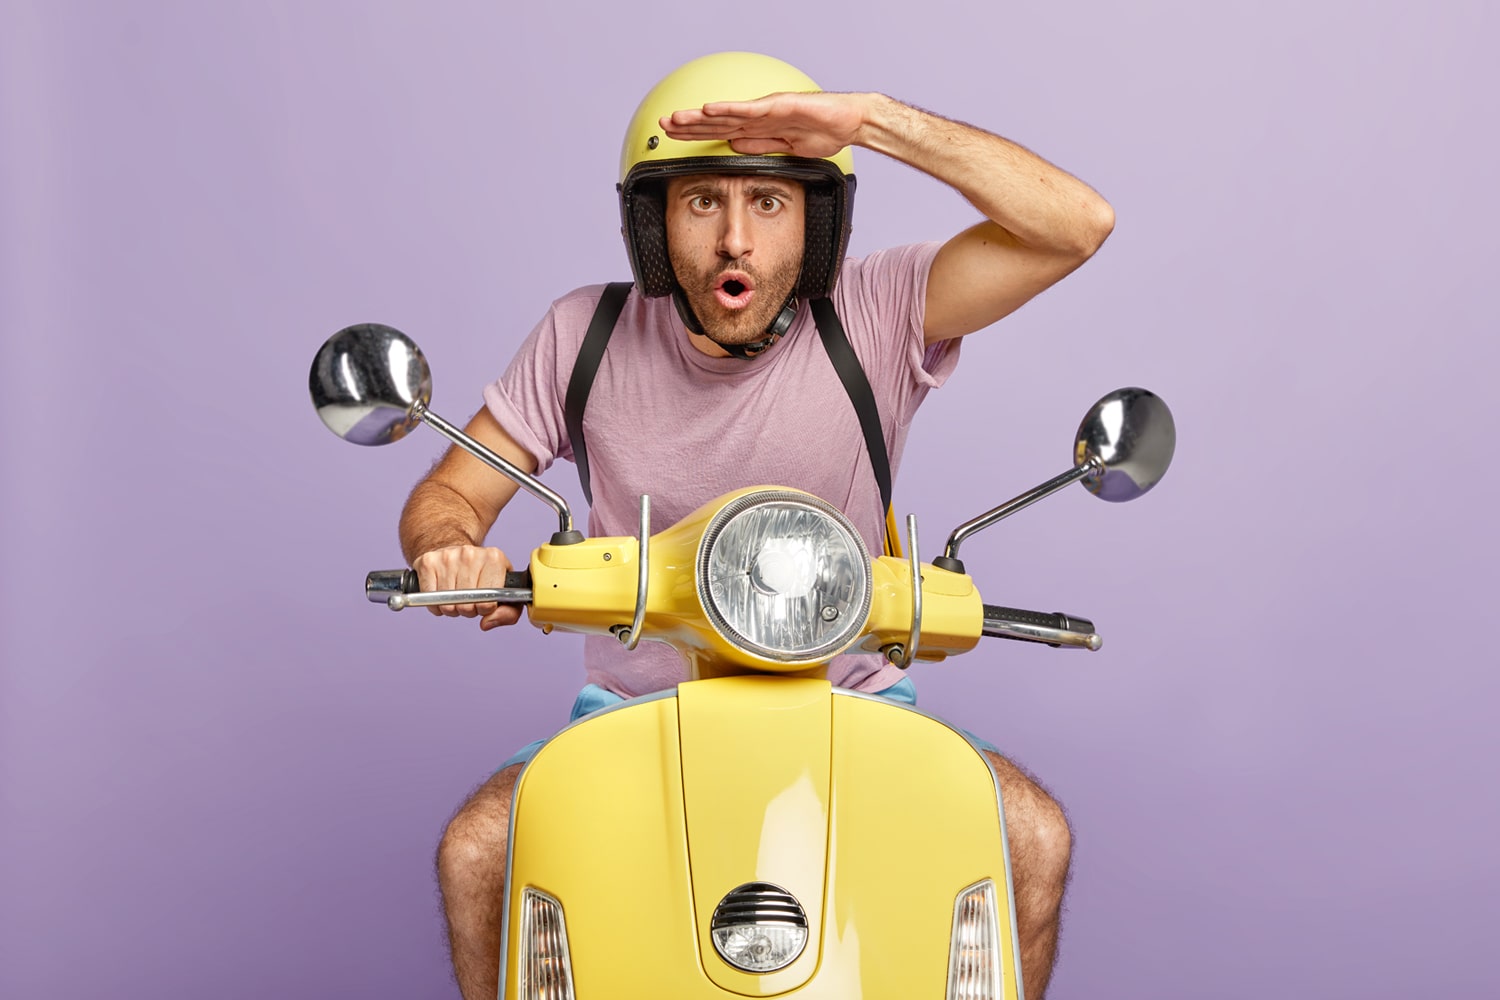 man on scooter wearing helmet